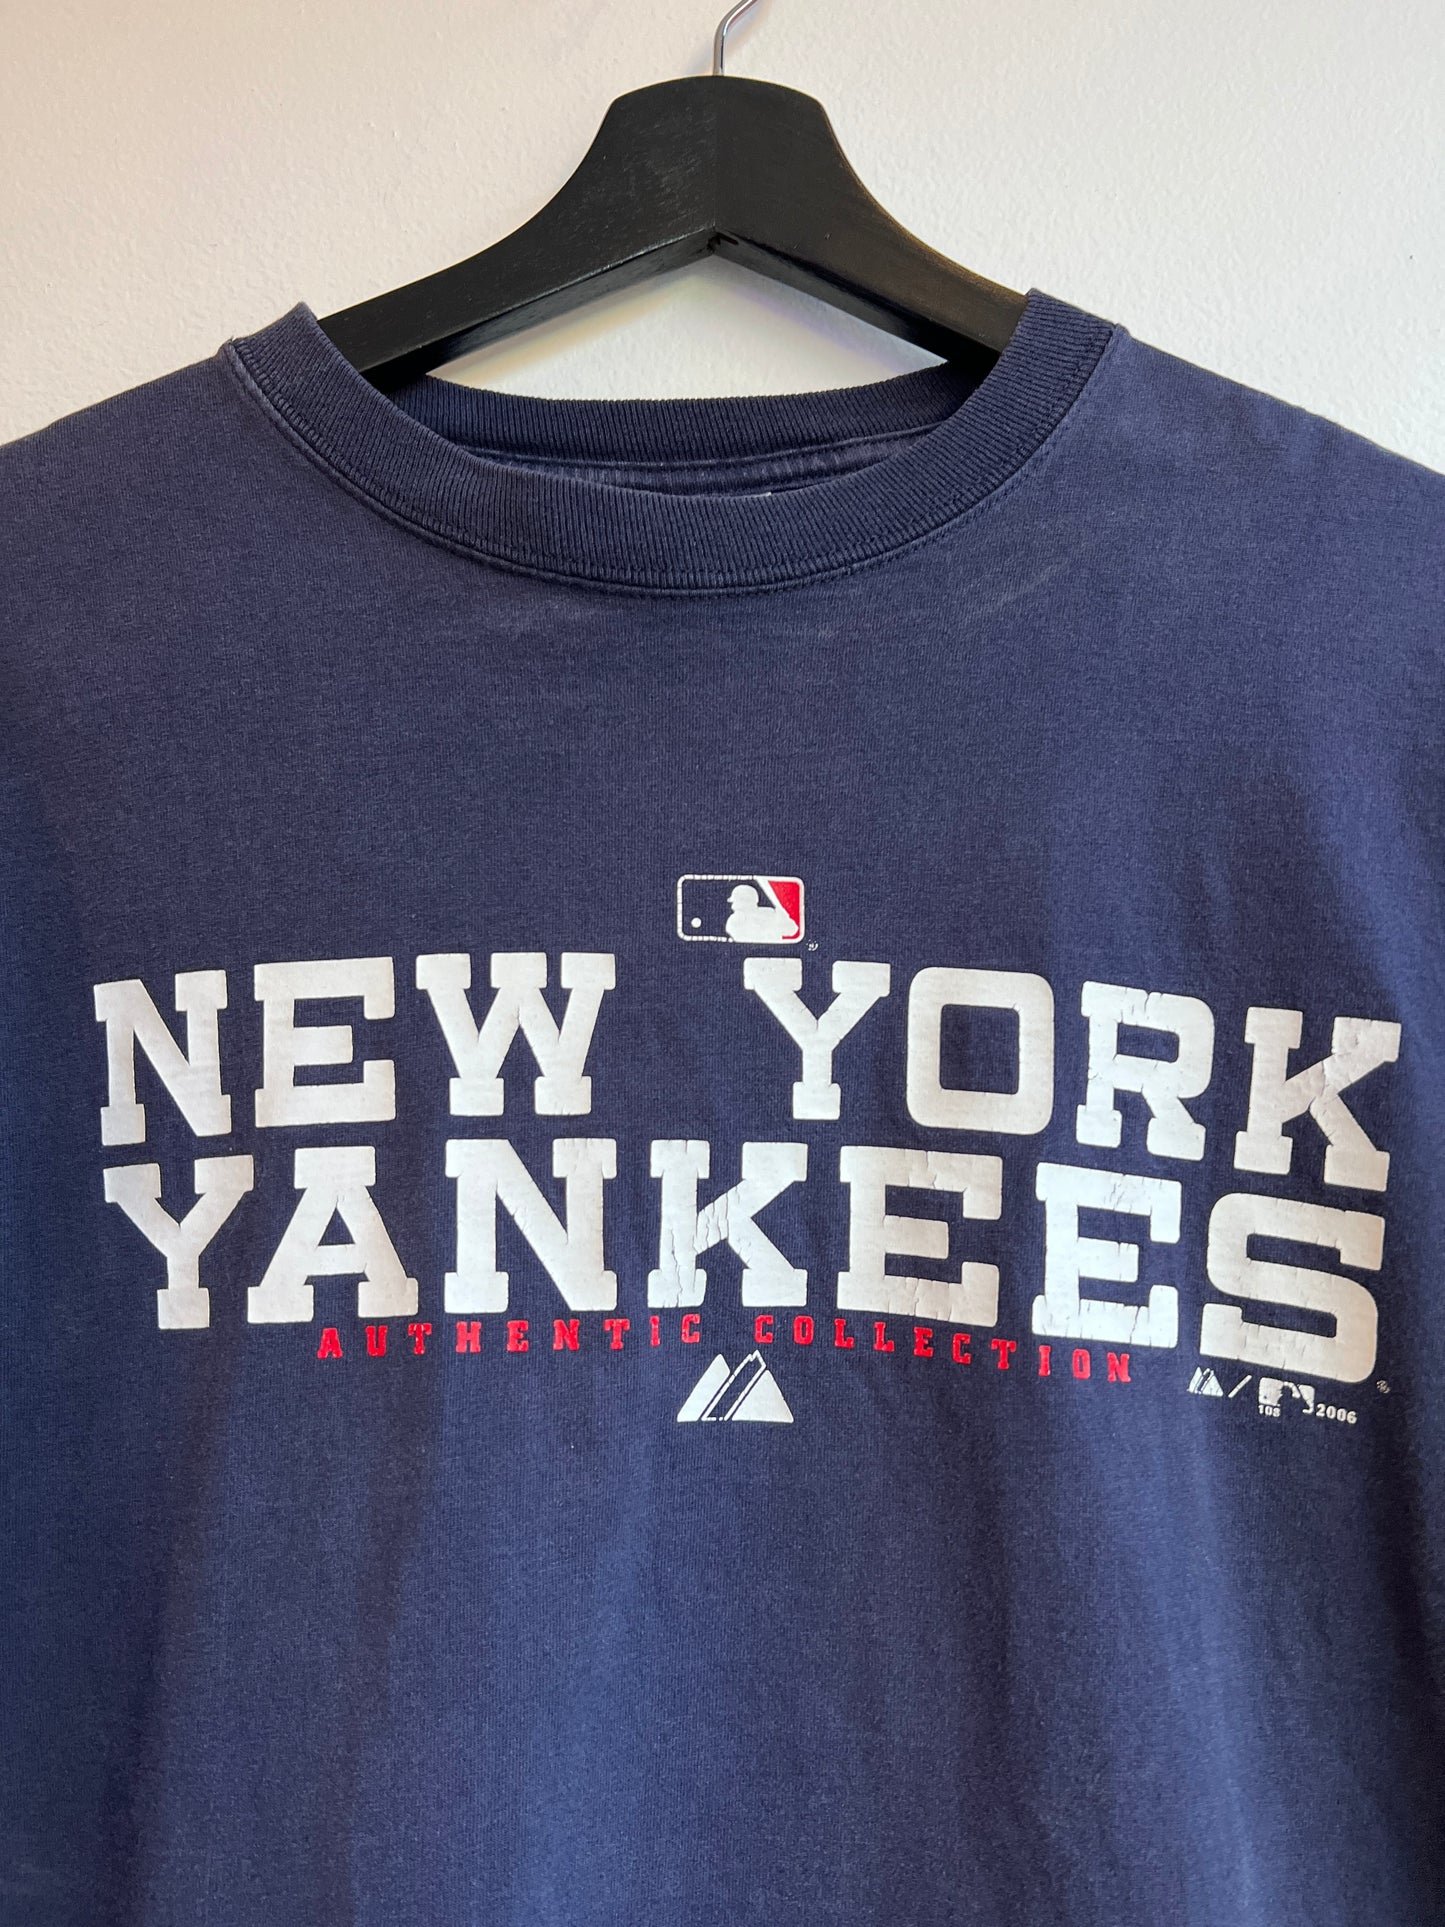 Vintage Yankee T-Shirt